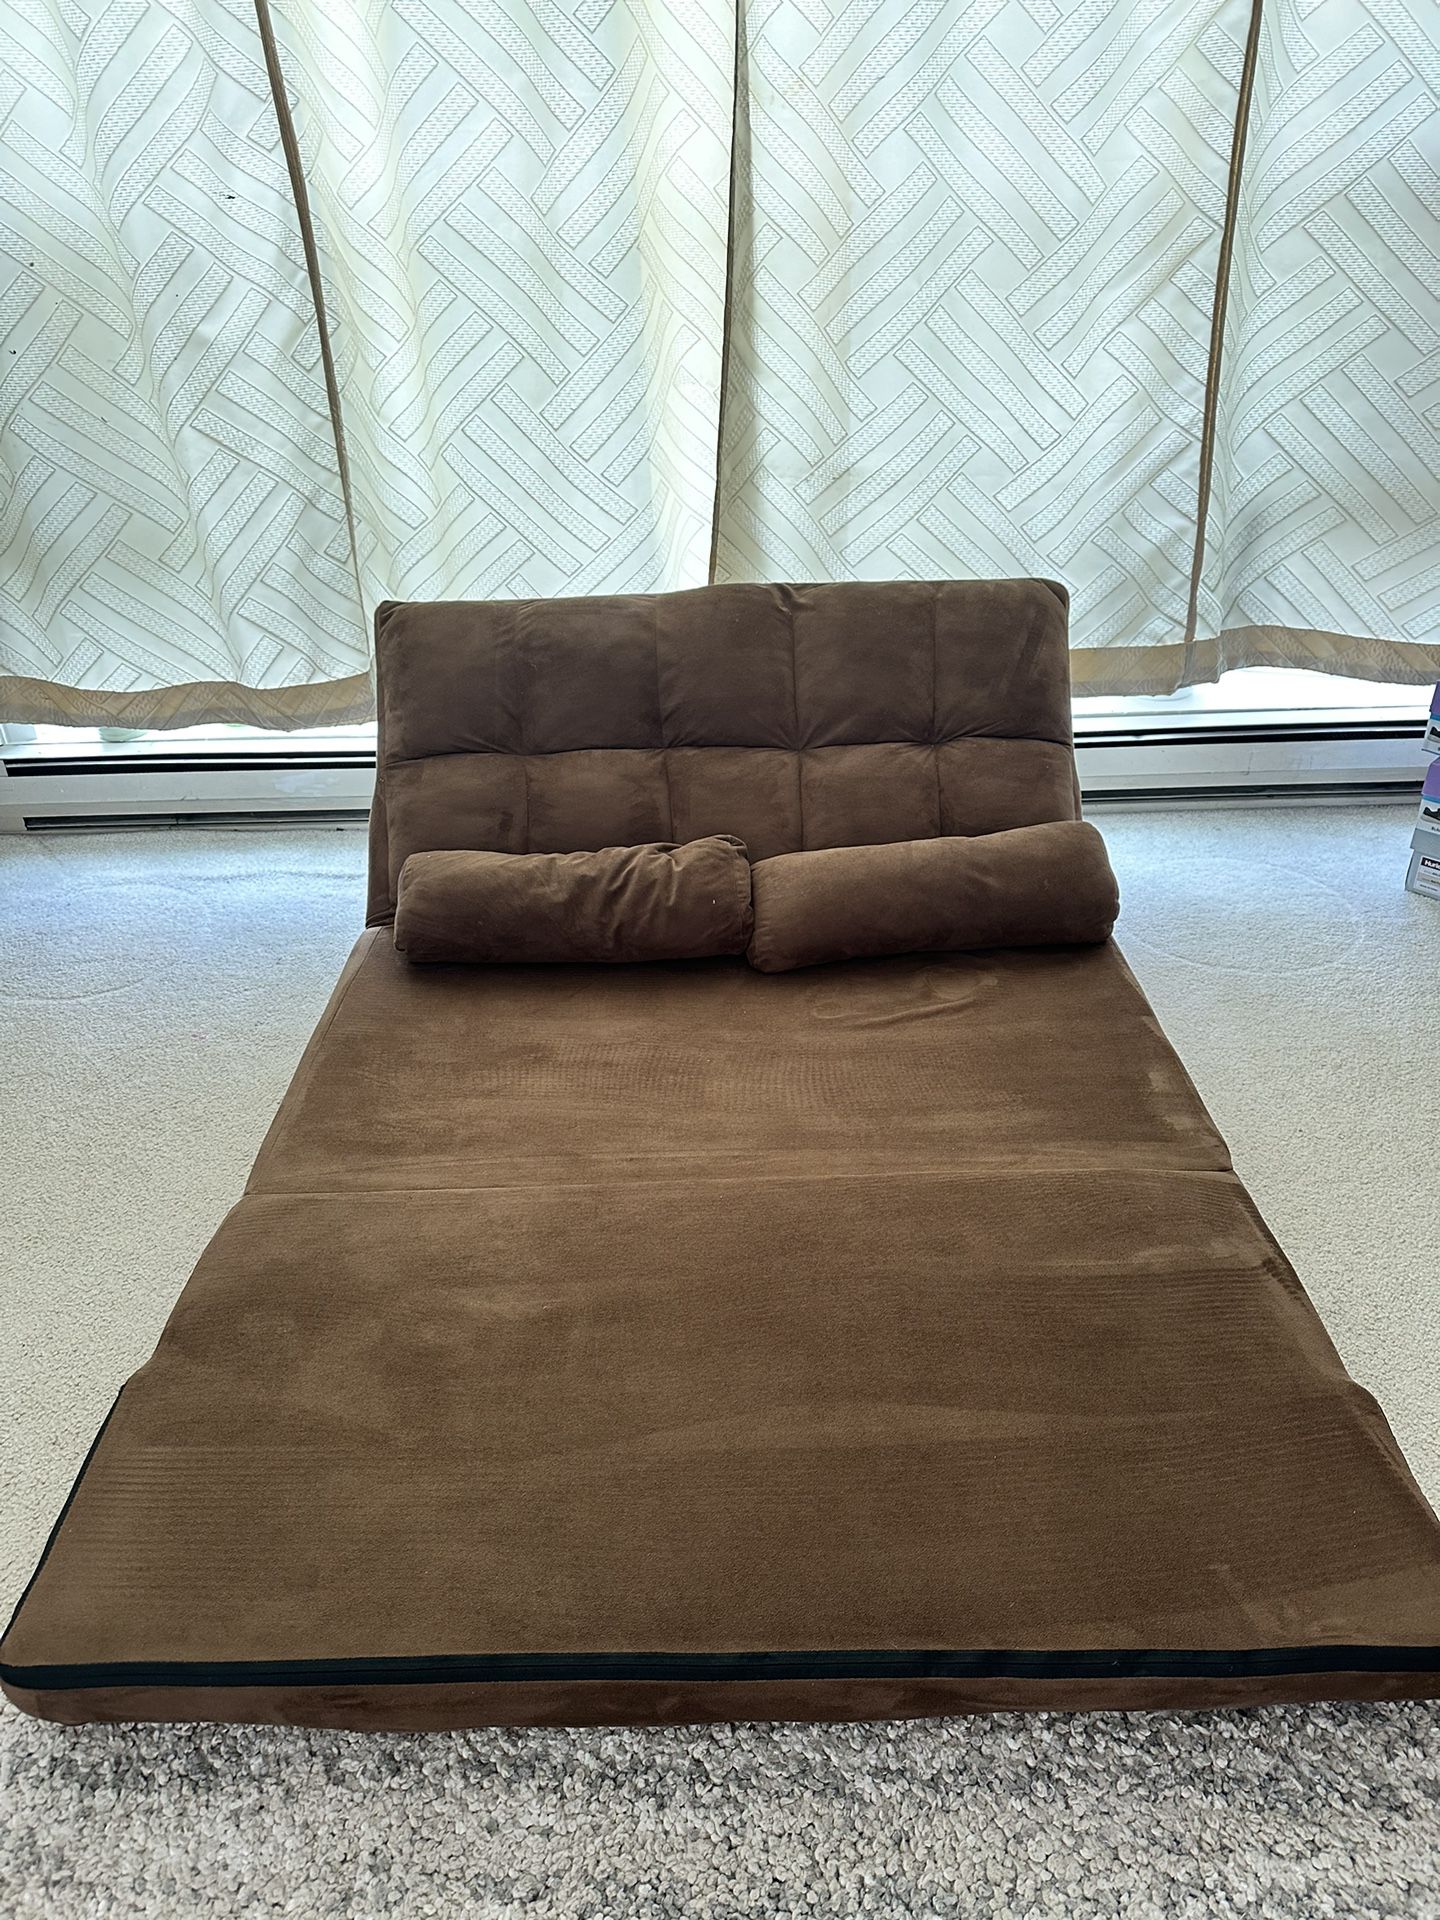 Foldable Futon Sofa Bed